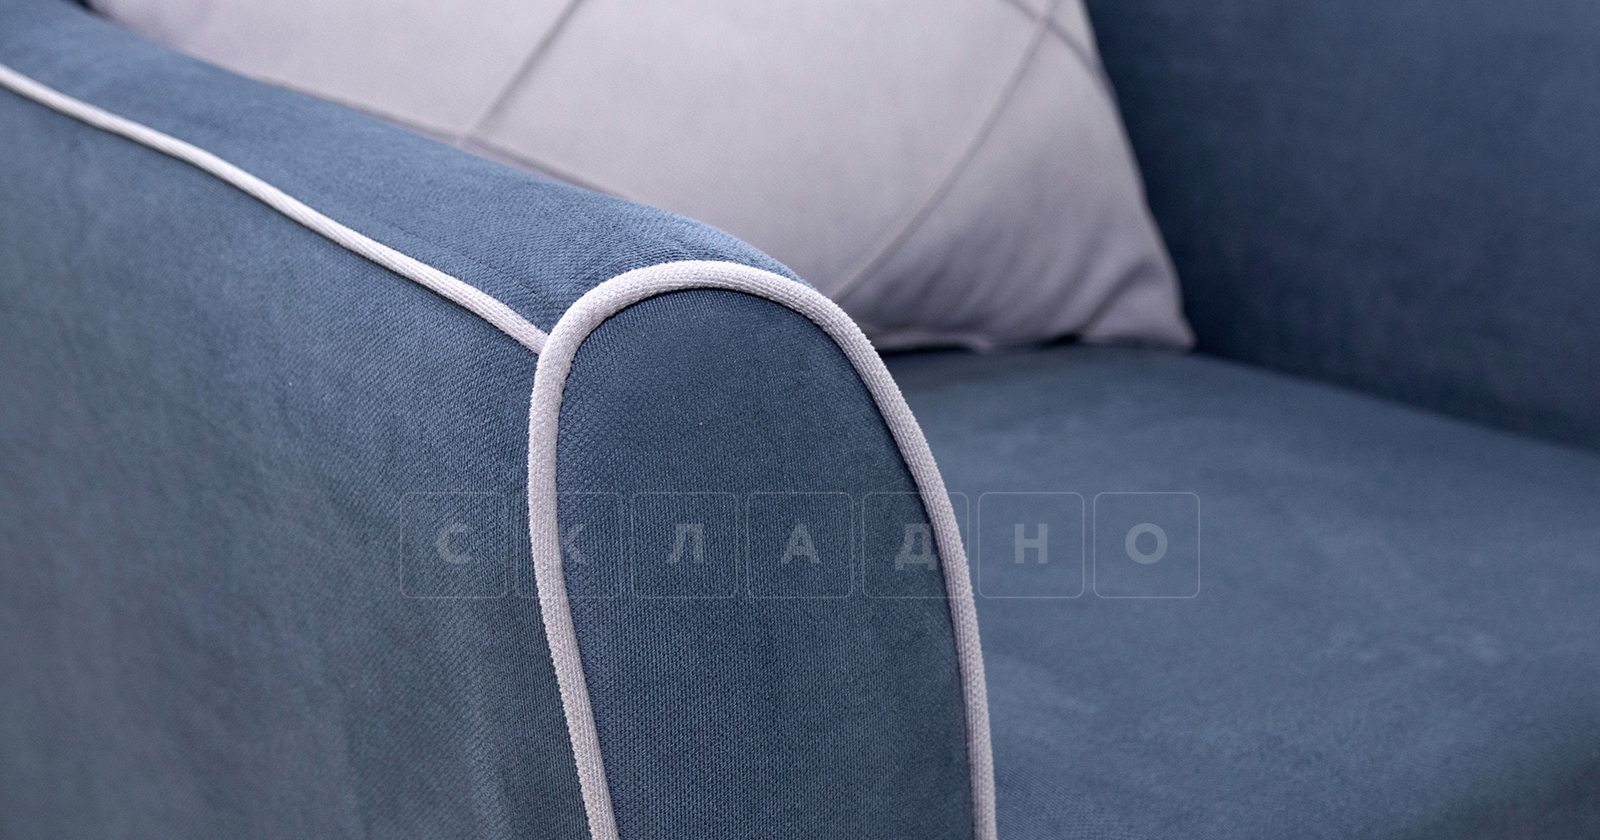 Кресло для отдыха Флэтфорд серо-синий фото 6 | интернет-магазин Складно